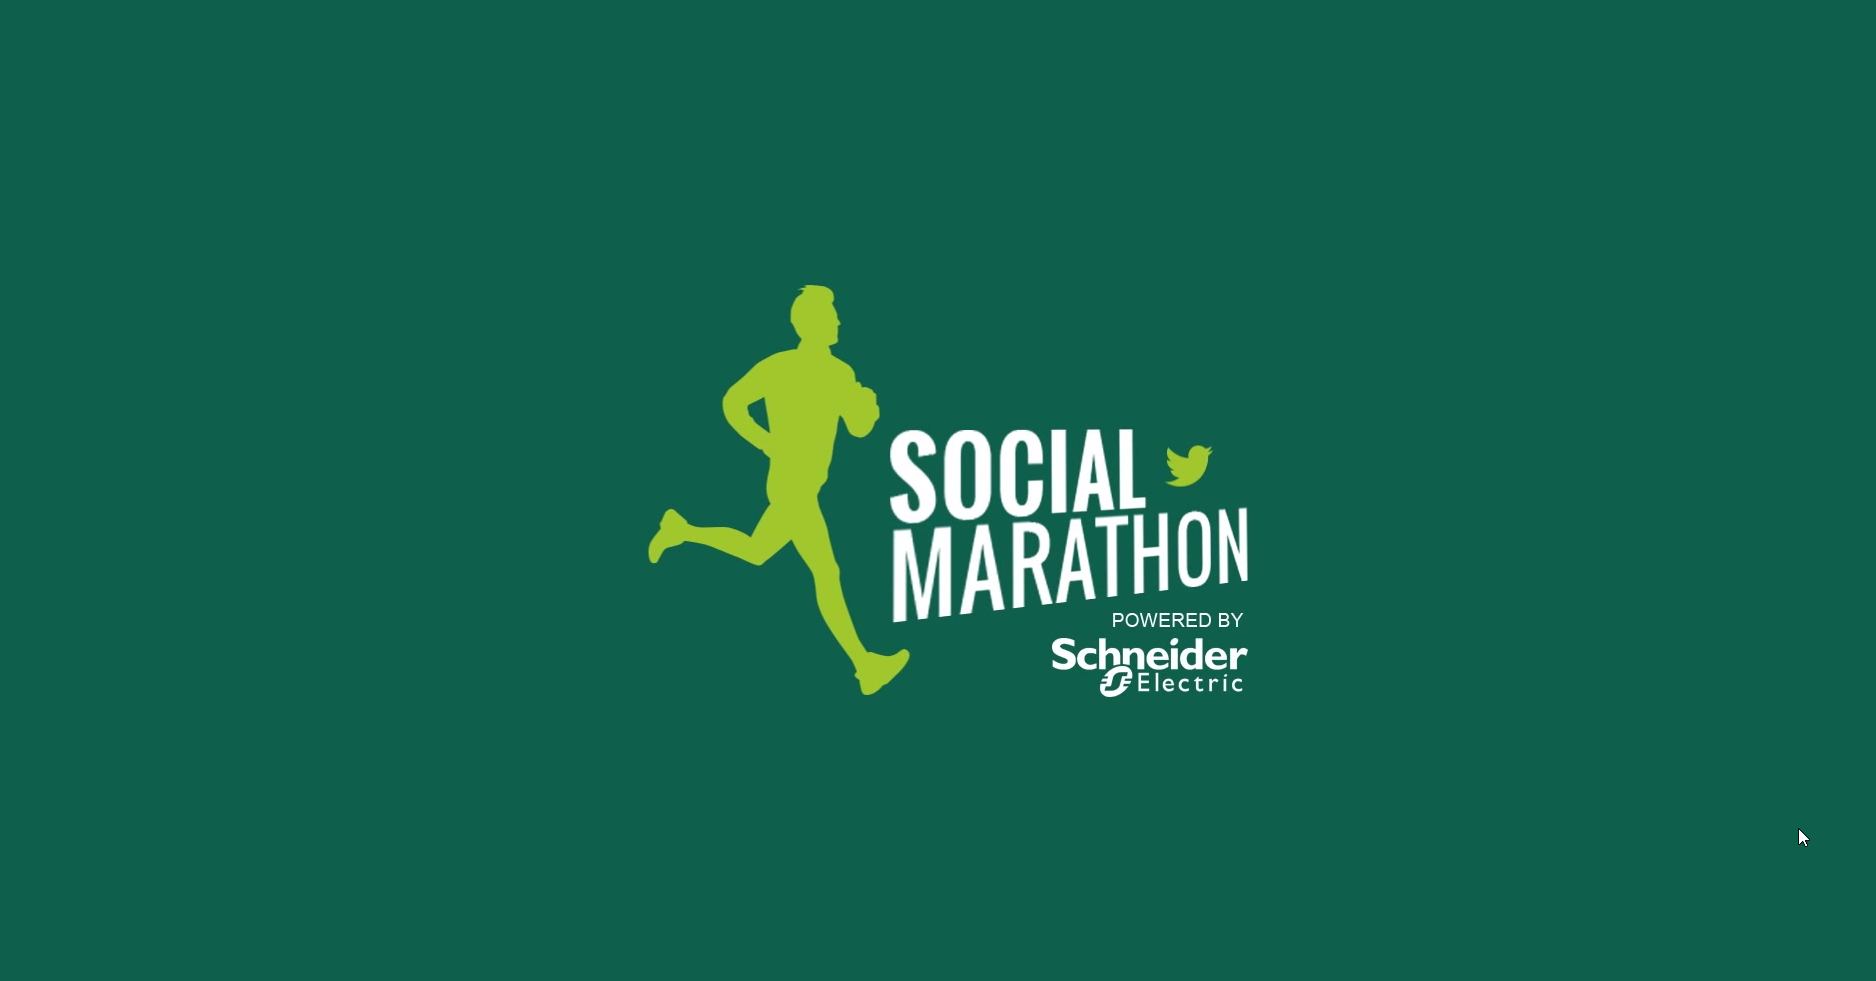 Social Marathon by Schneider Electric